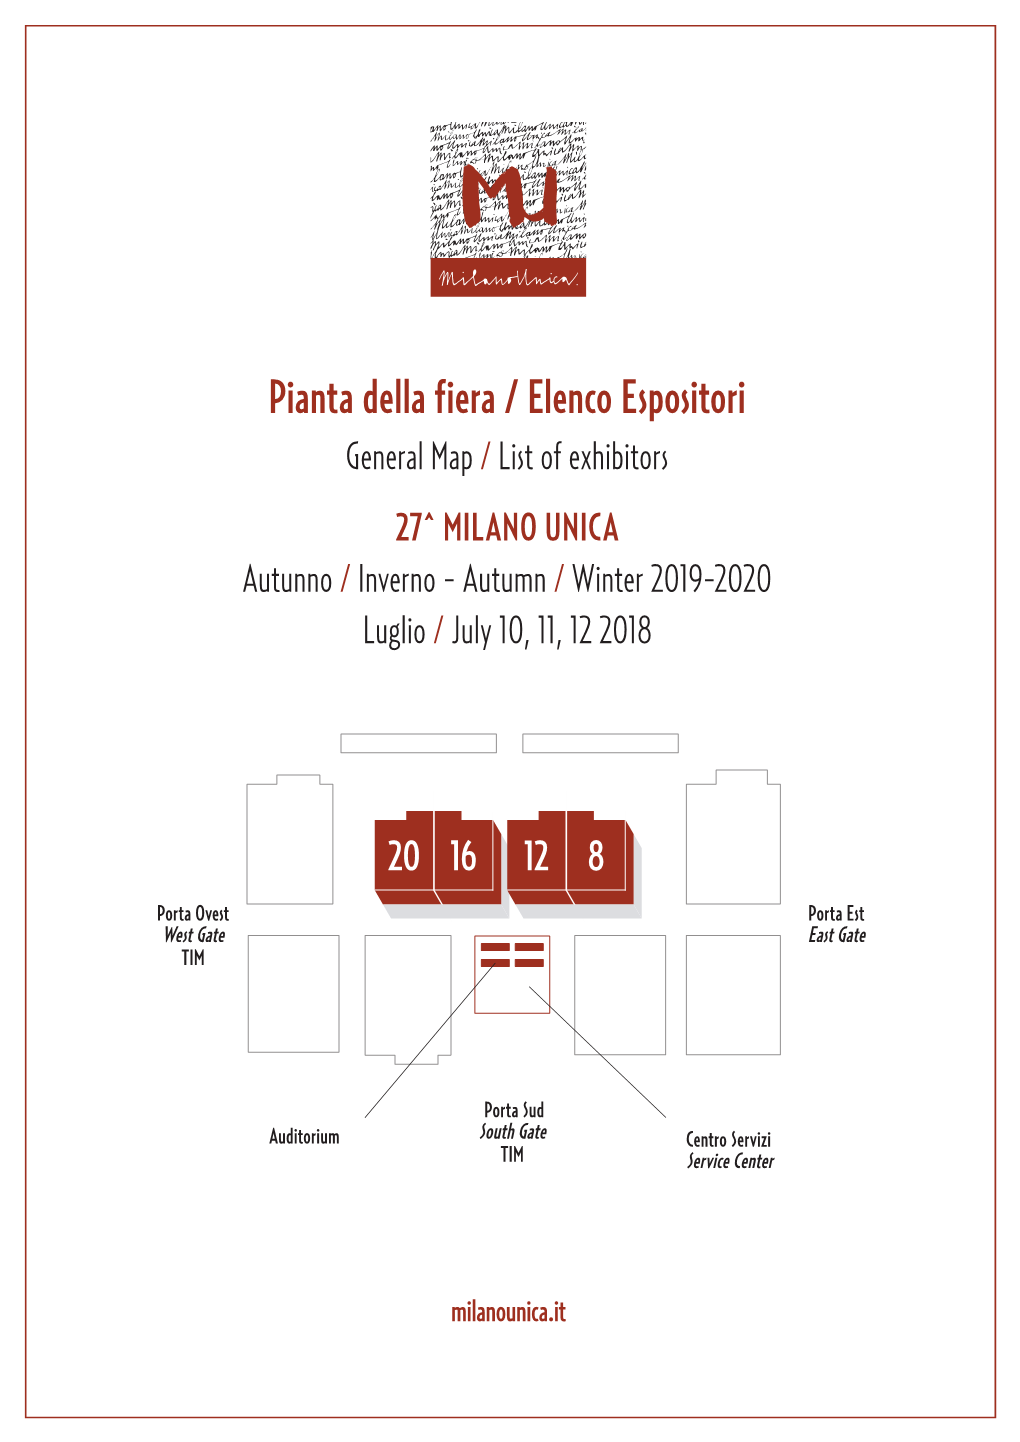 Pianta Della Fiera / Elenco Espositori General Map / List of Exhibitors